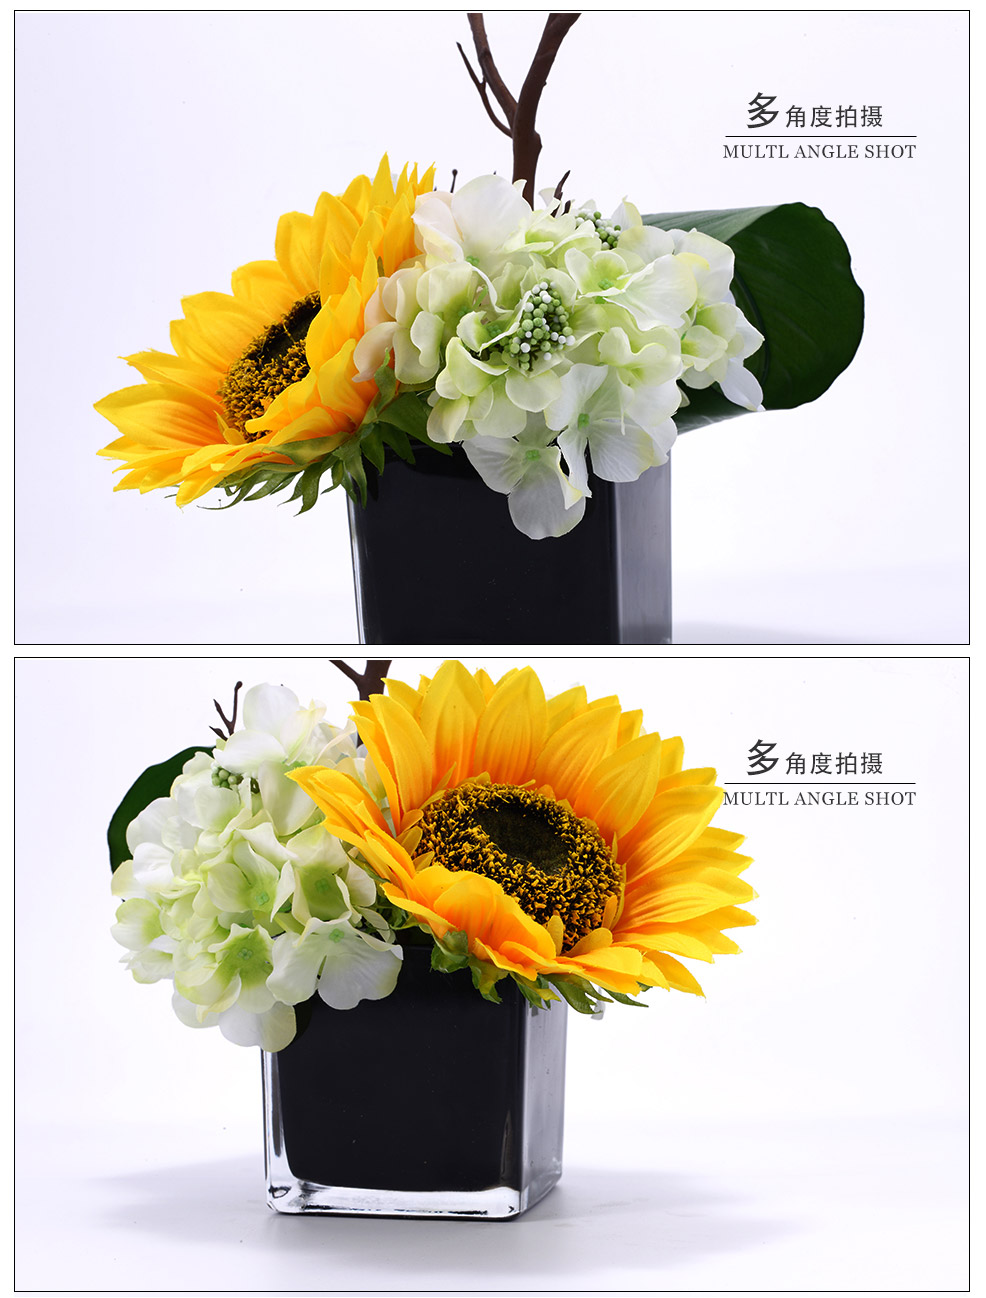 Mediterranean sunflower flower design simulation flower simulation plant home decoration XL-1010-0153